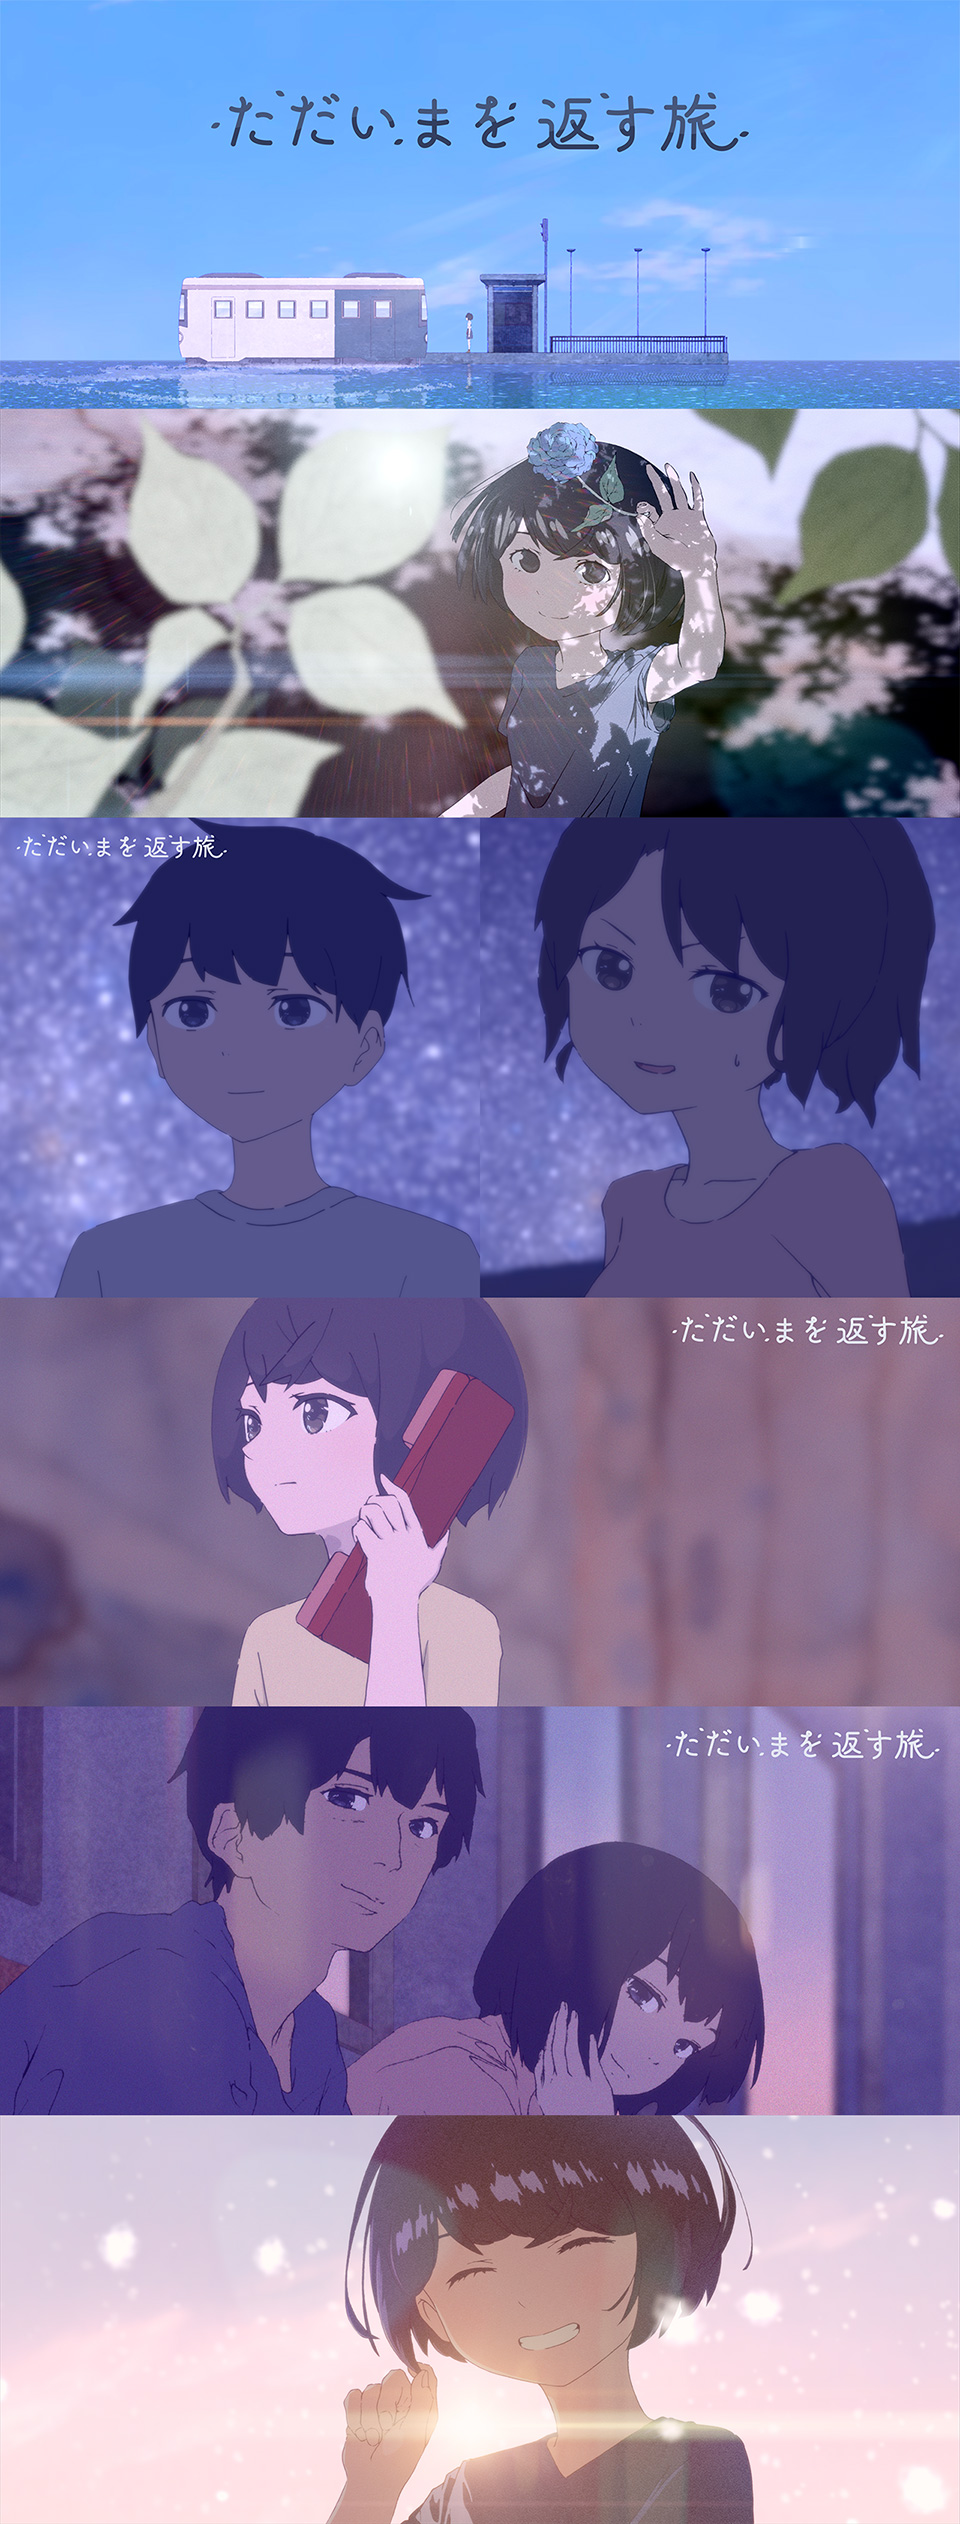 村松大翔思監督作品 自主制作アニメ映画『ただいまを返す旅』